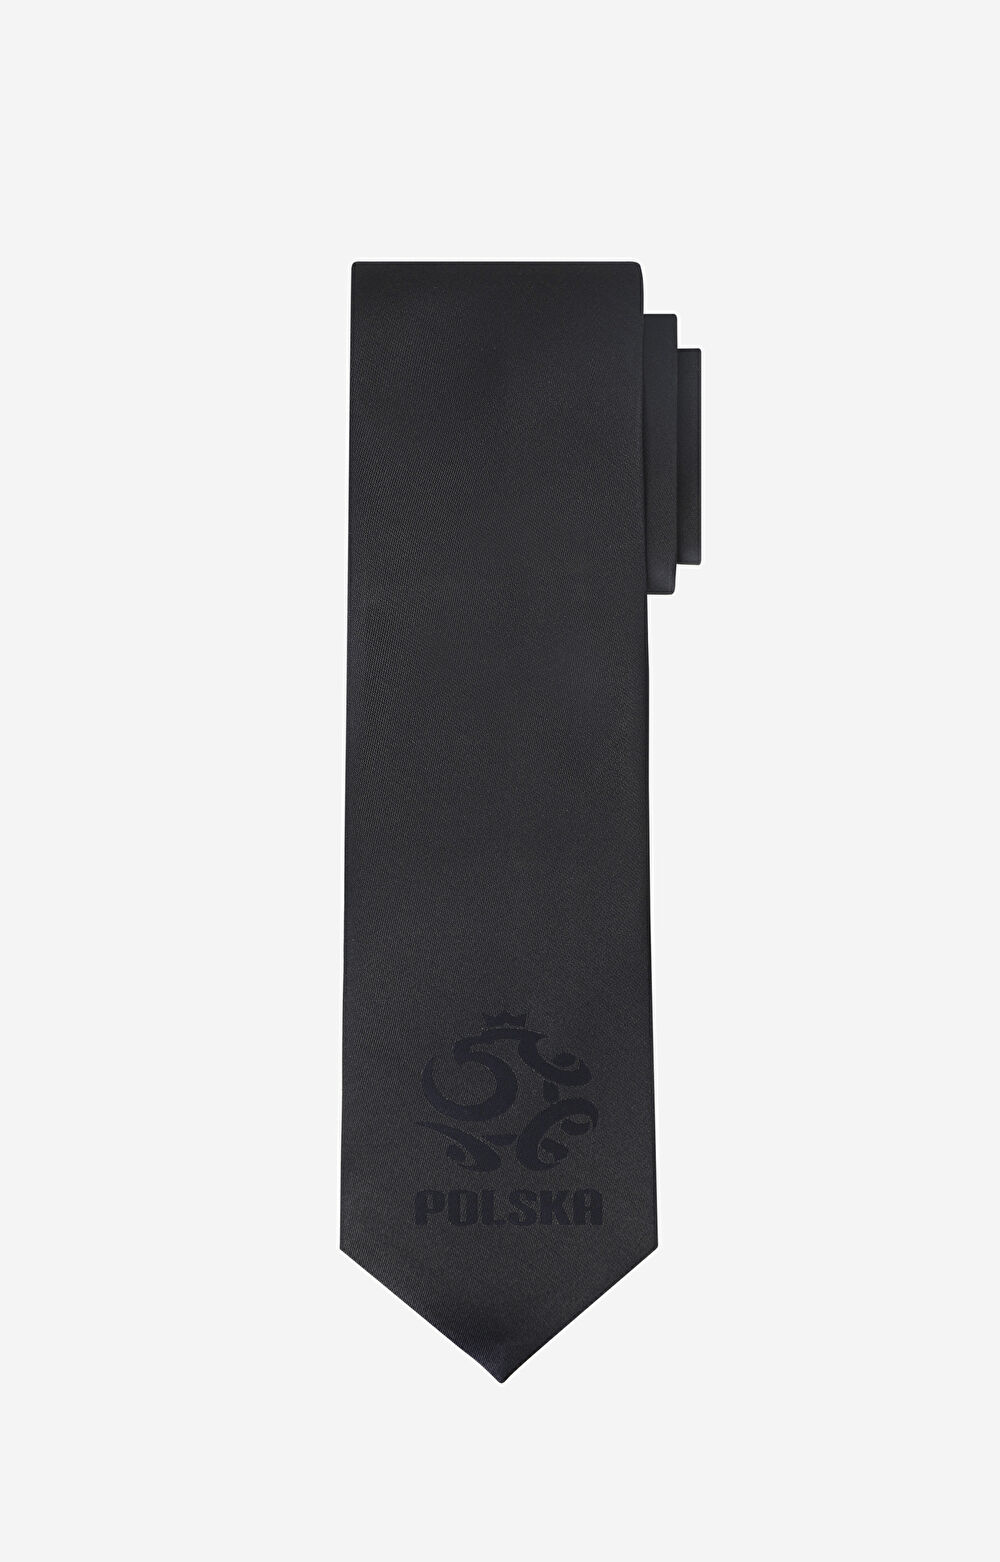 VISTULA|PZPN - Jedwabny krawat z logo